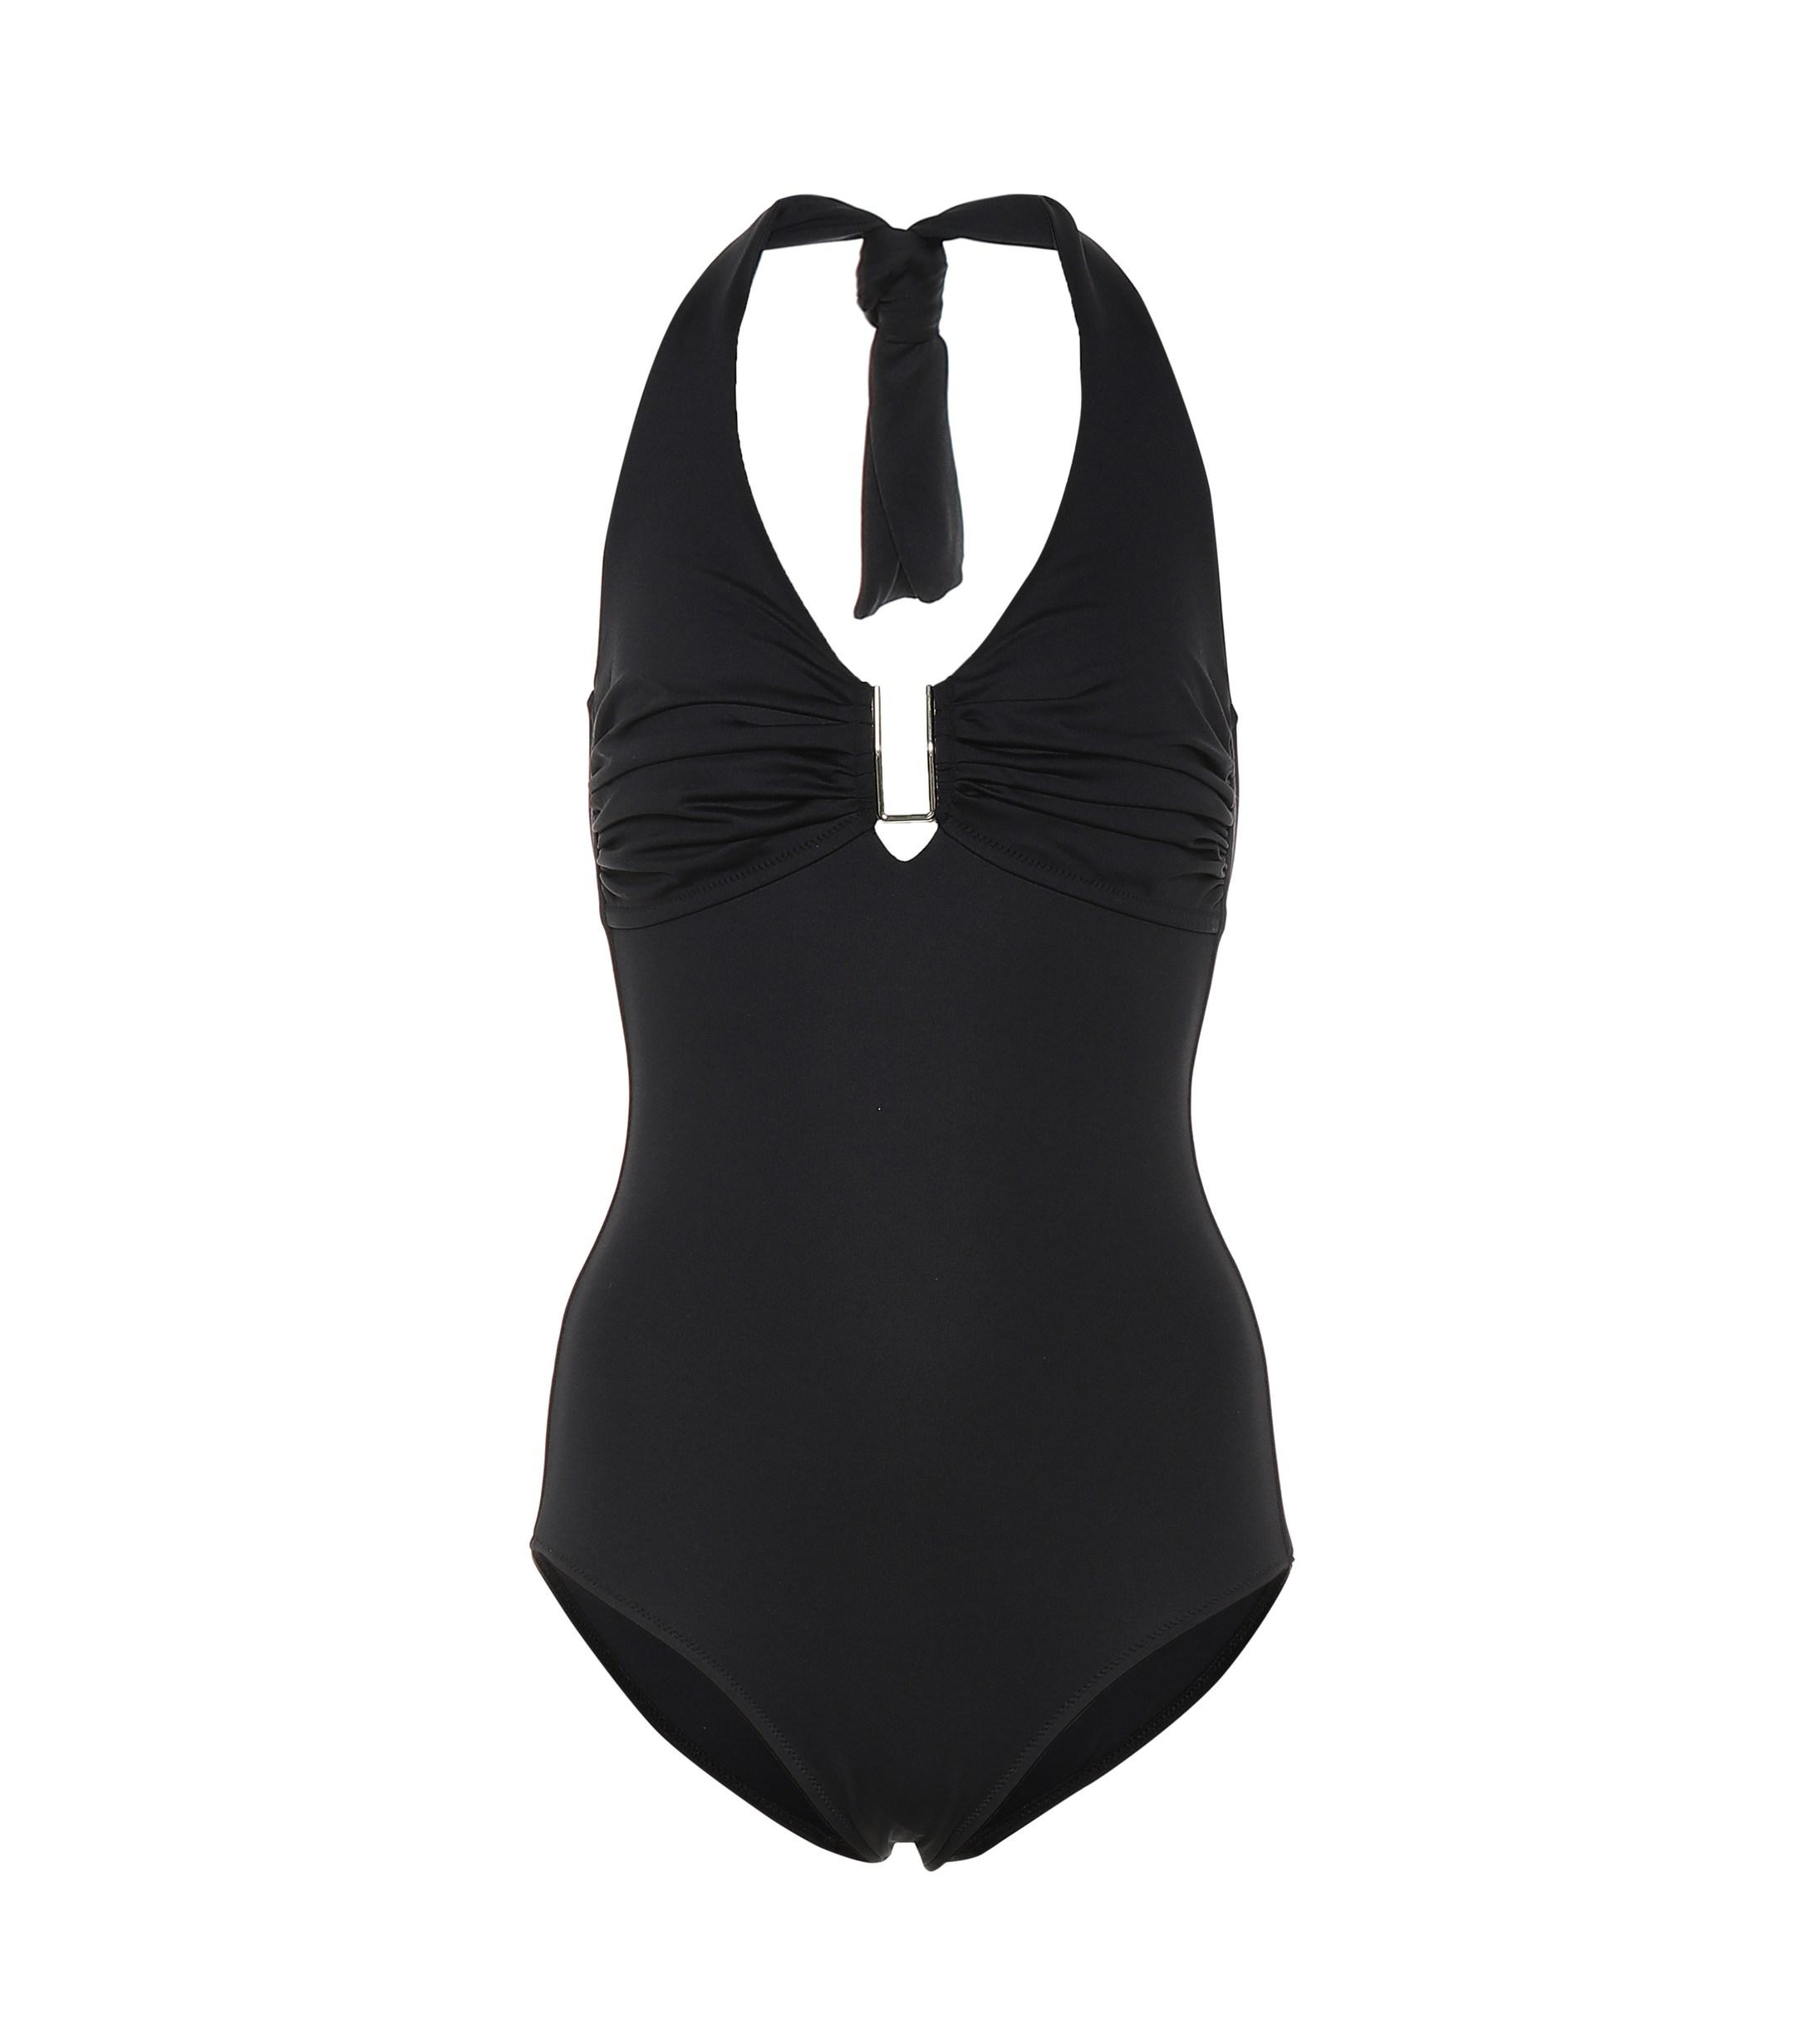 Melissa Odabash Tampa Halterneck Swimsuit in Black - Save 22% - Lyst